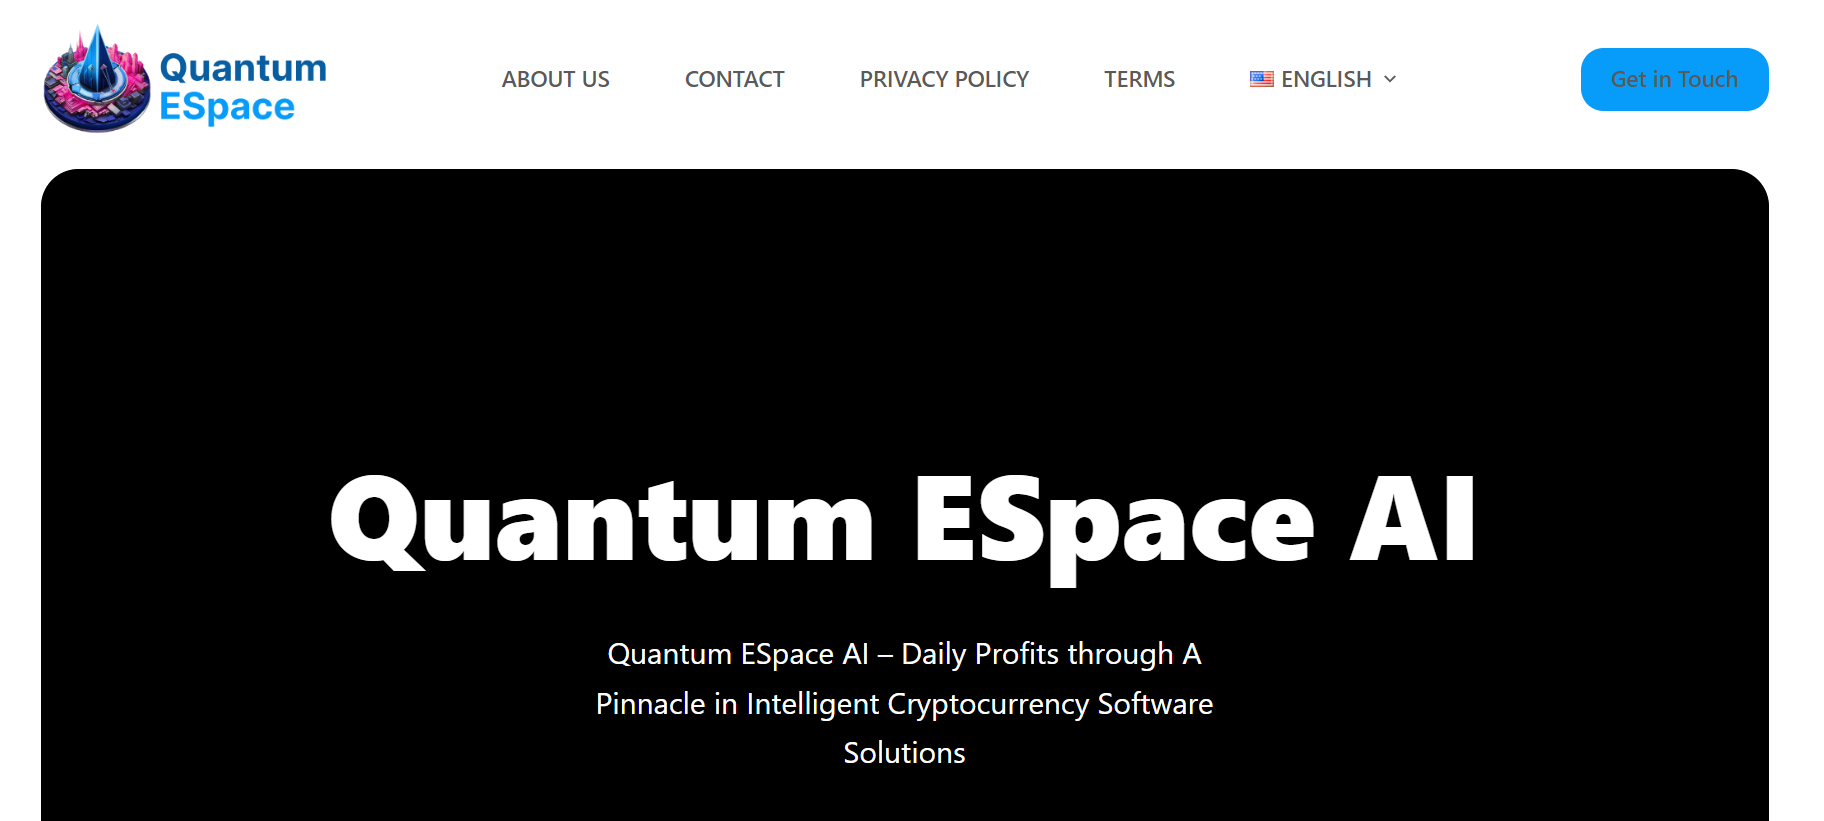 Quantum Espace